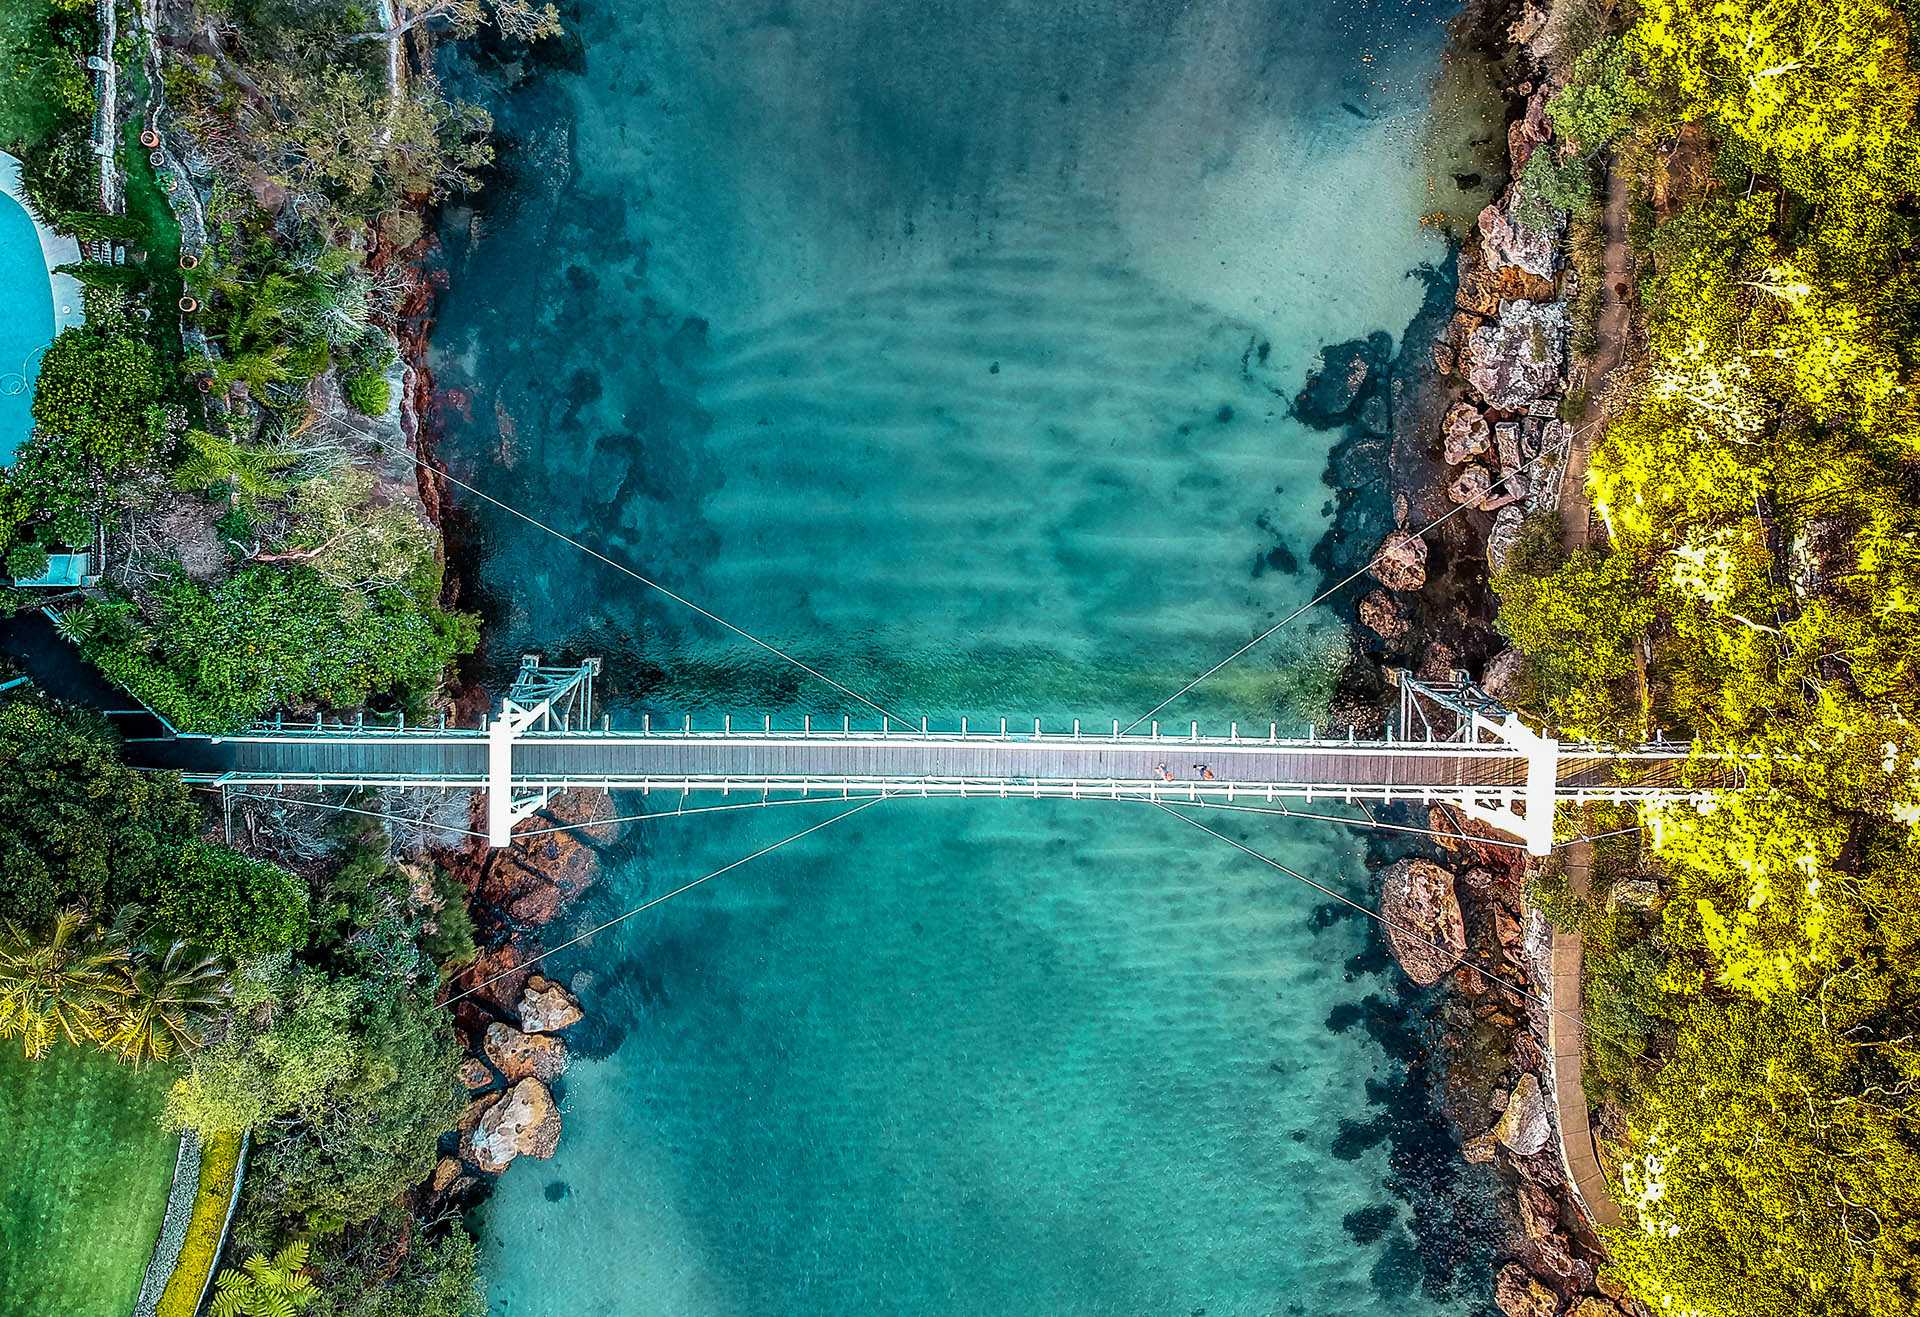 Bridge connects landscapes